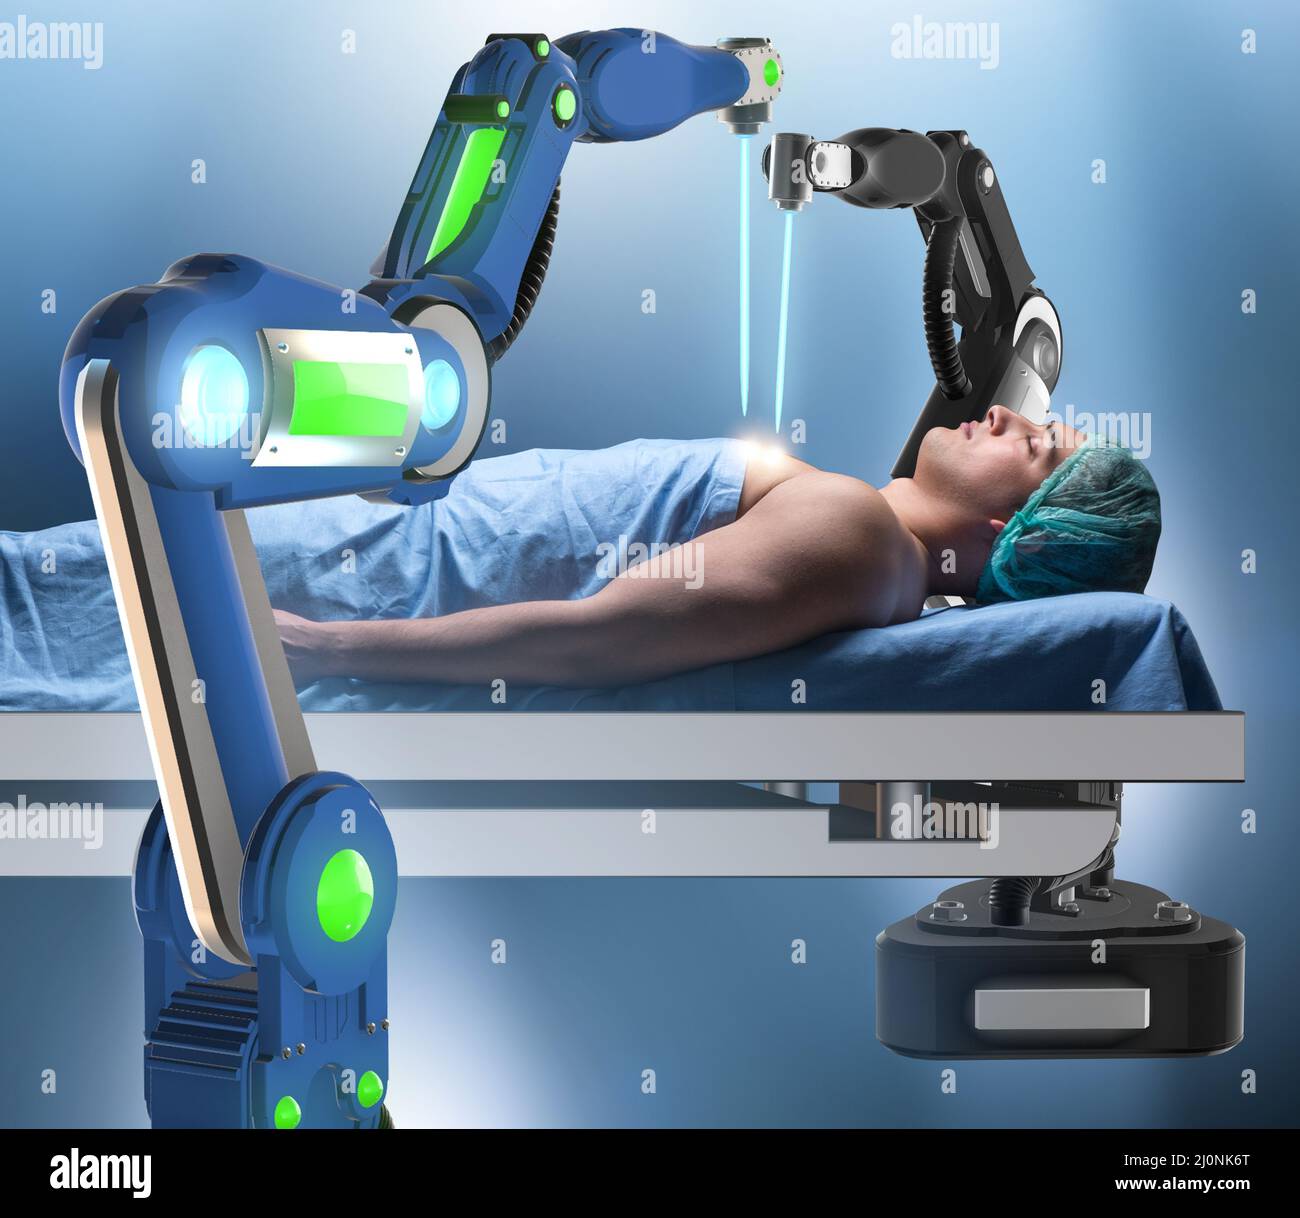 La cirugía realizada por el brazo robótico Foto de stock